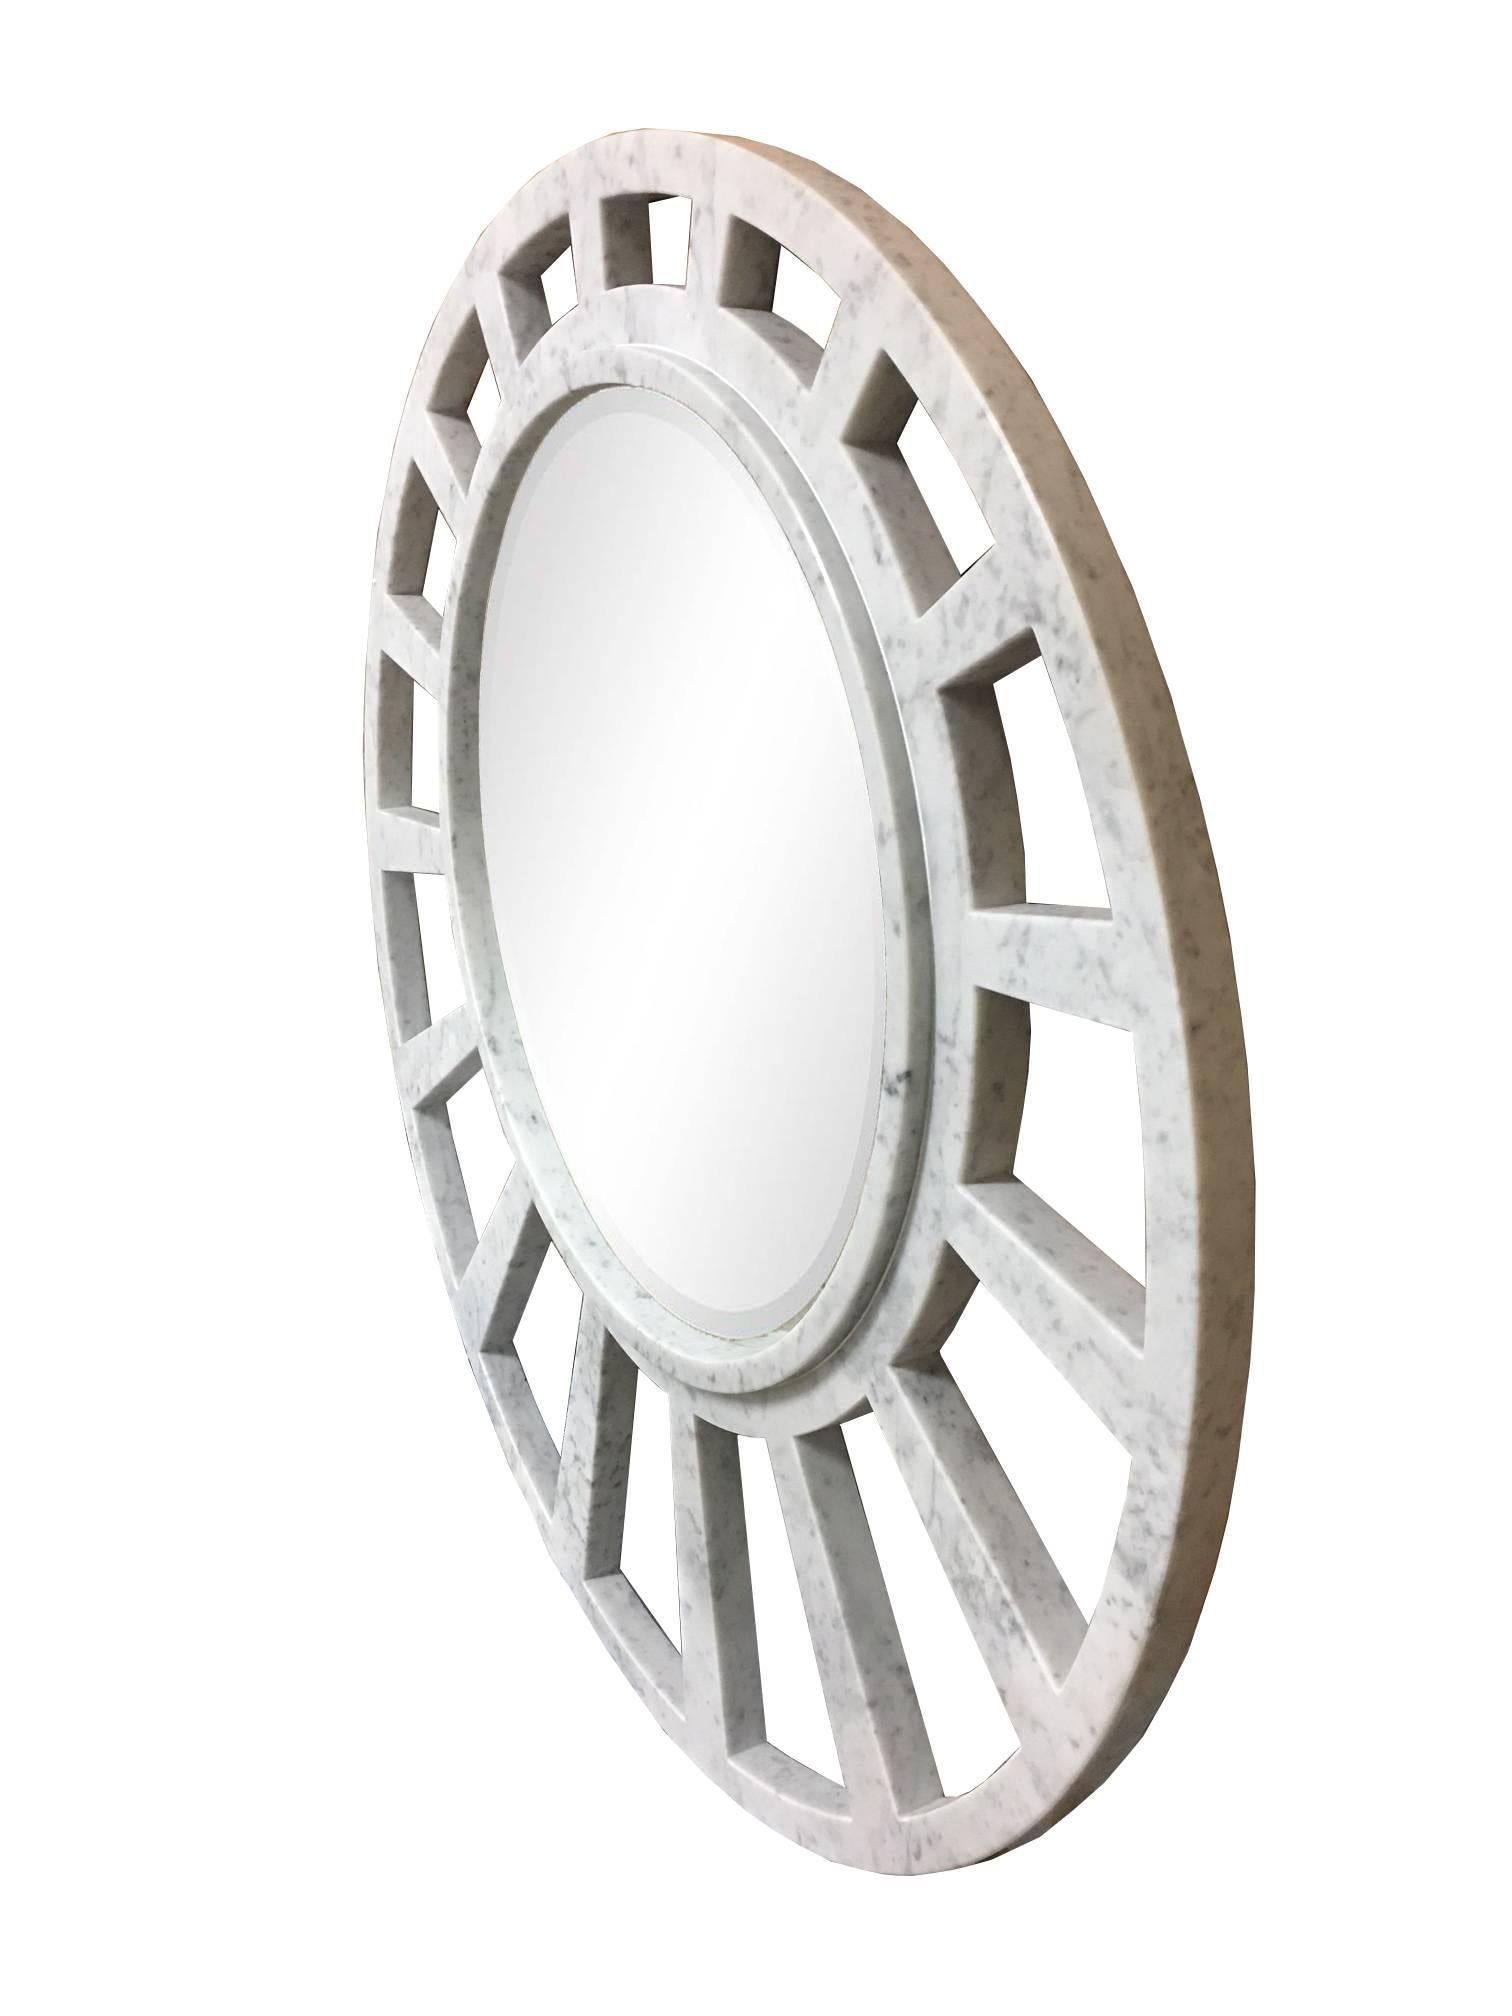 Italienischer Spiegel aus weißem Carrara-Marmor in handgefertigter Konstruktion mit offenem geometrischem Muster, das elliptisch erscheint und einen großen Spiegel einrahmt. Das offene Fachwerkmuster simuliert eine schlichte, moderne